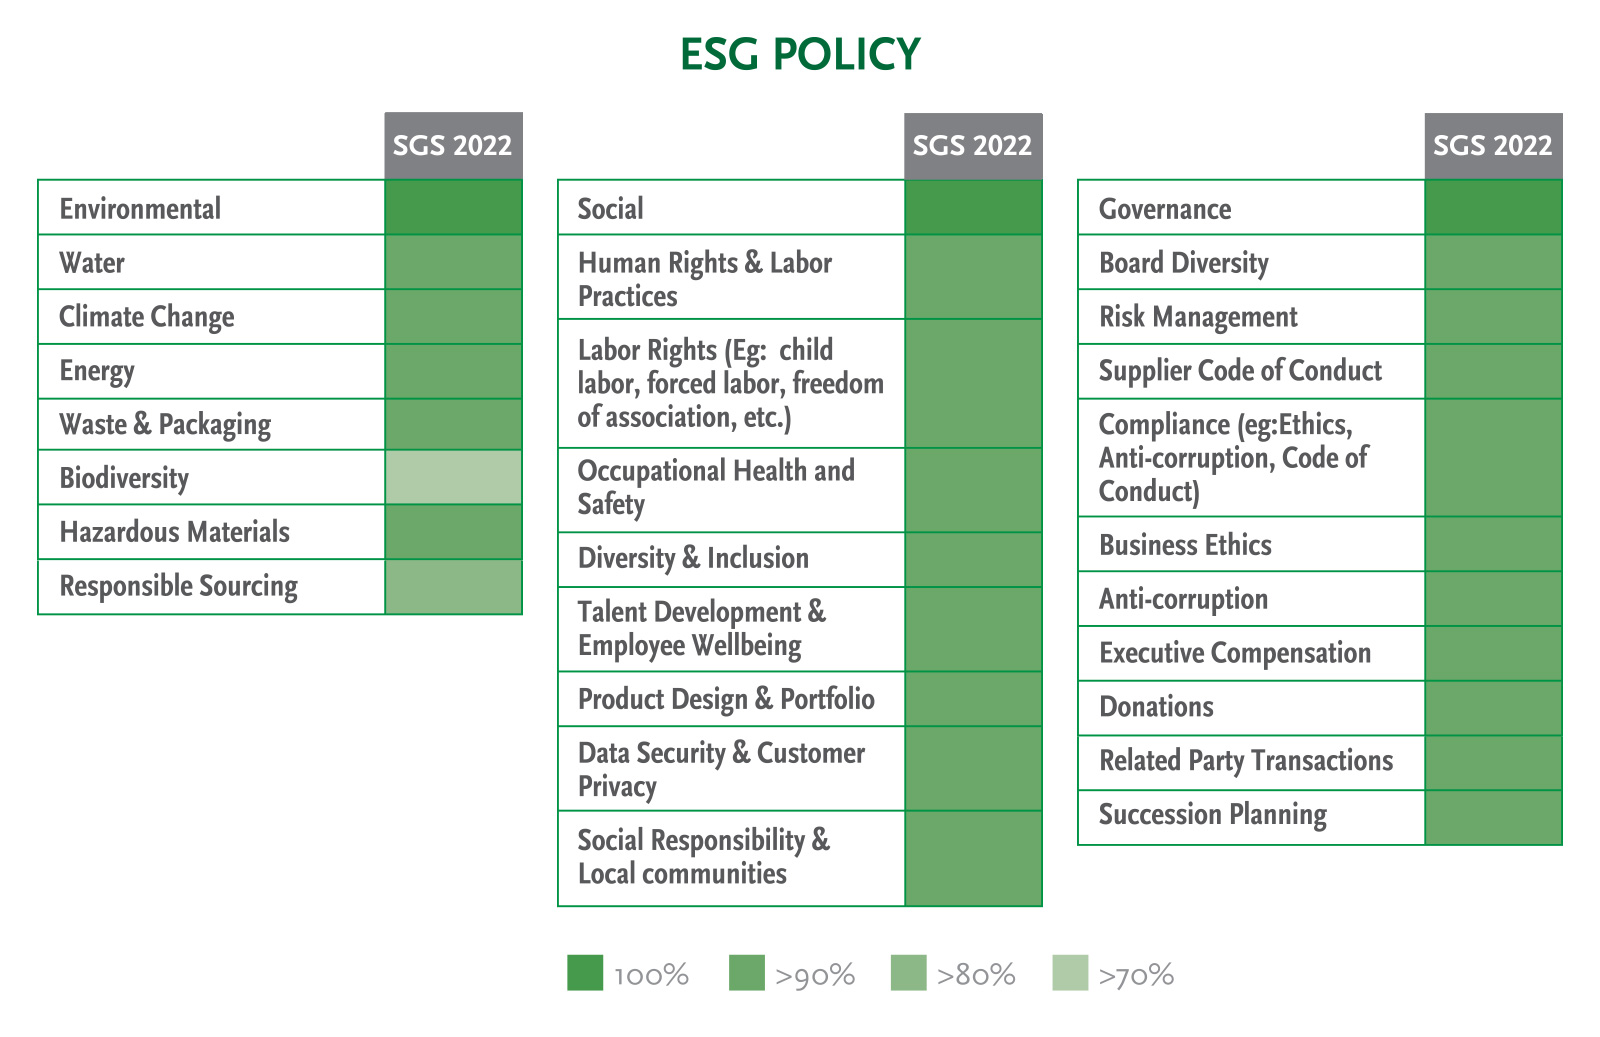 SGS 2022 ESG Policy